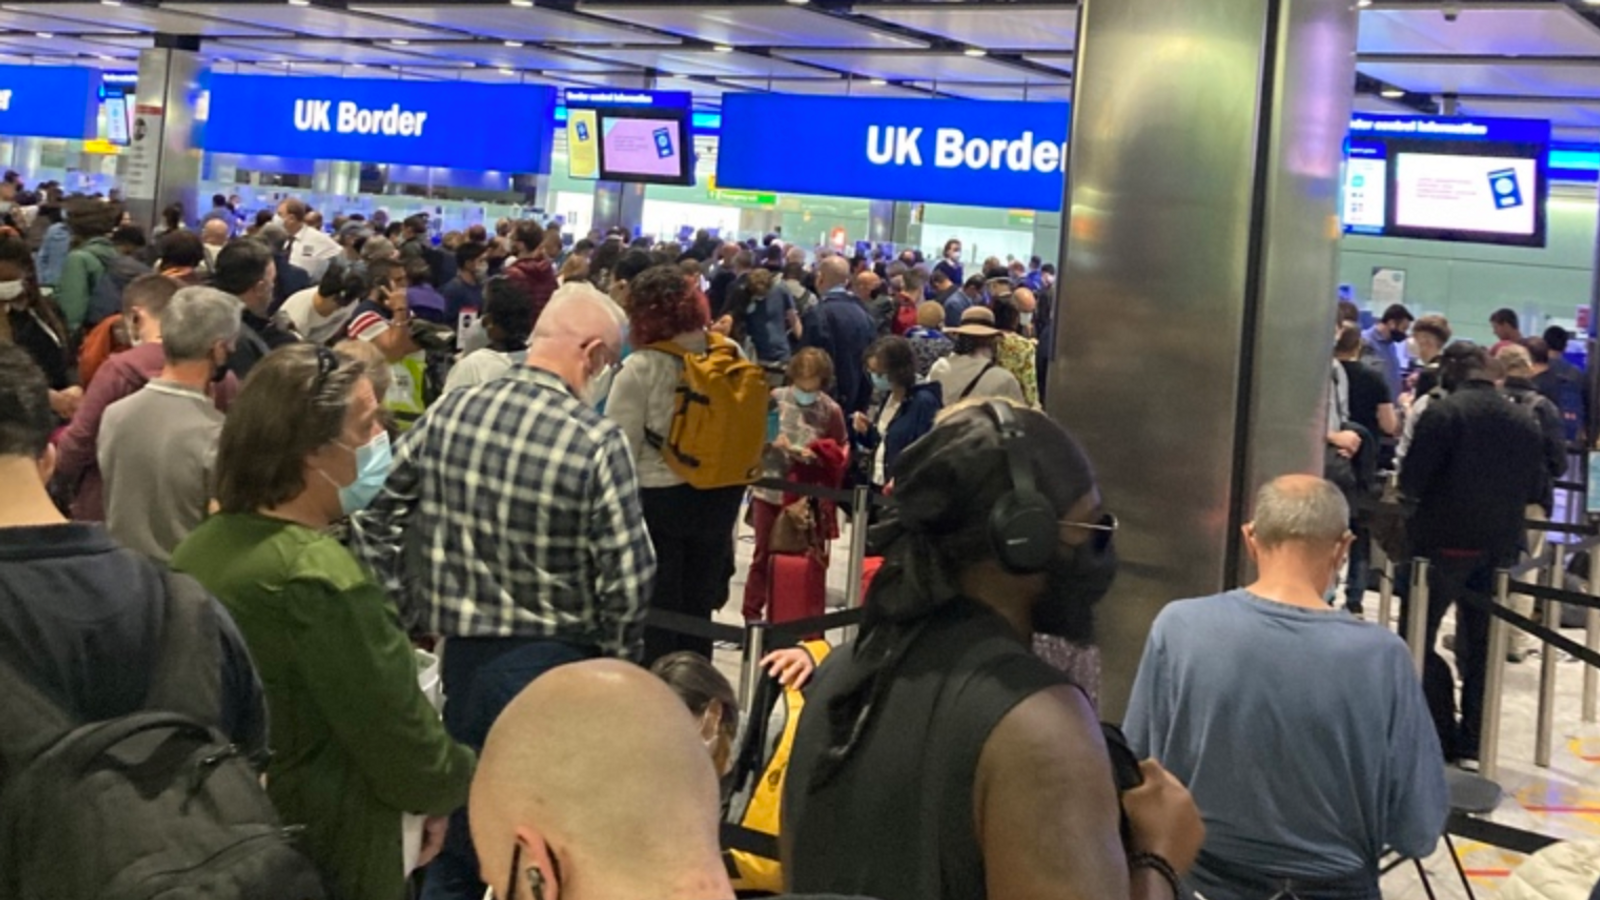 صورة للفوضى في مطار هيثرو البريطاني - صورة من شاشة شكاي نيوز 